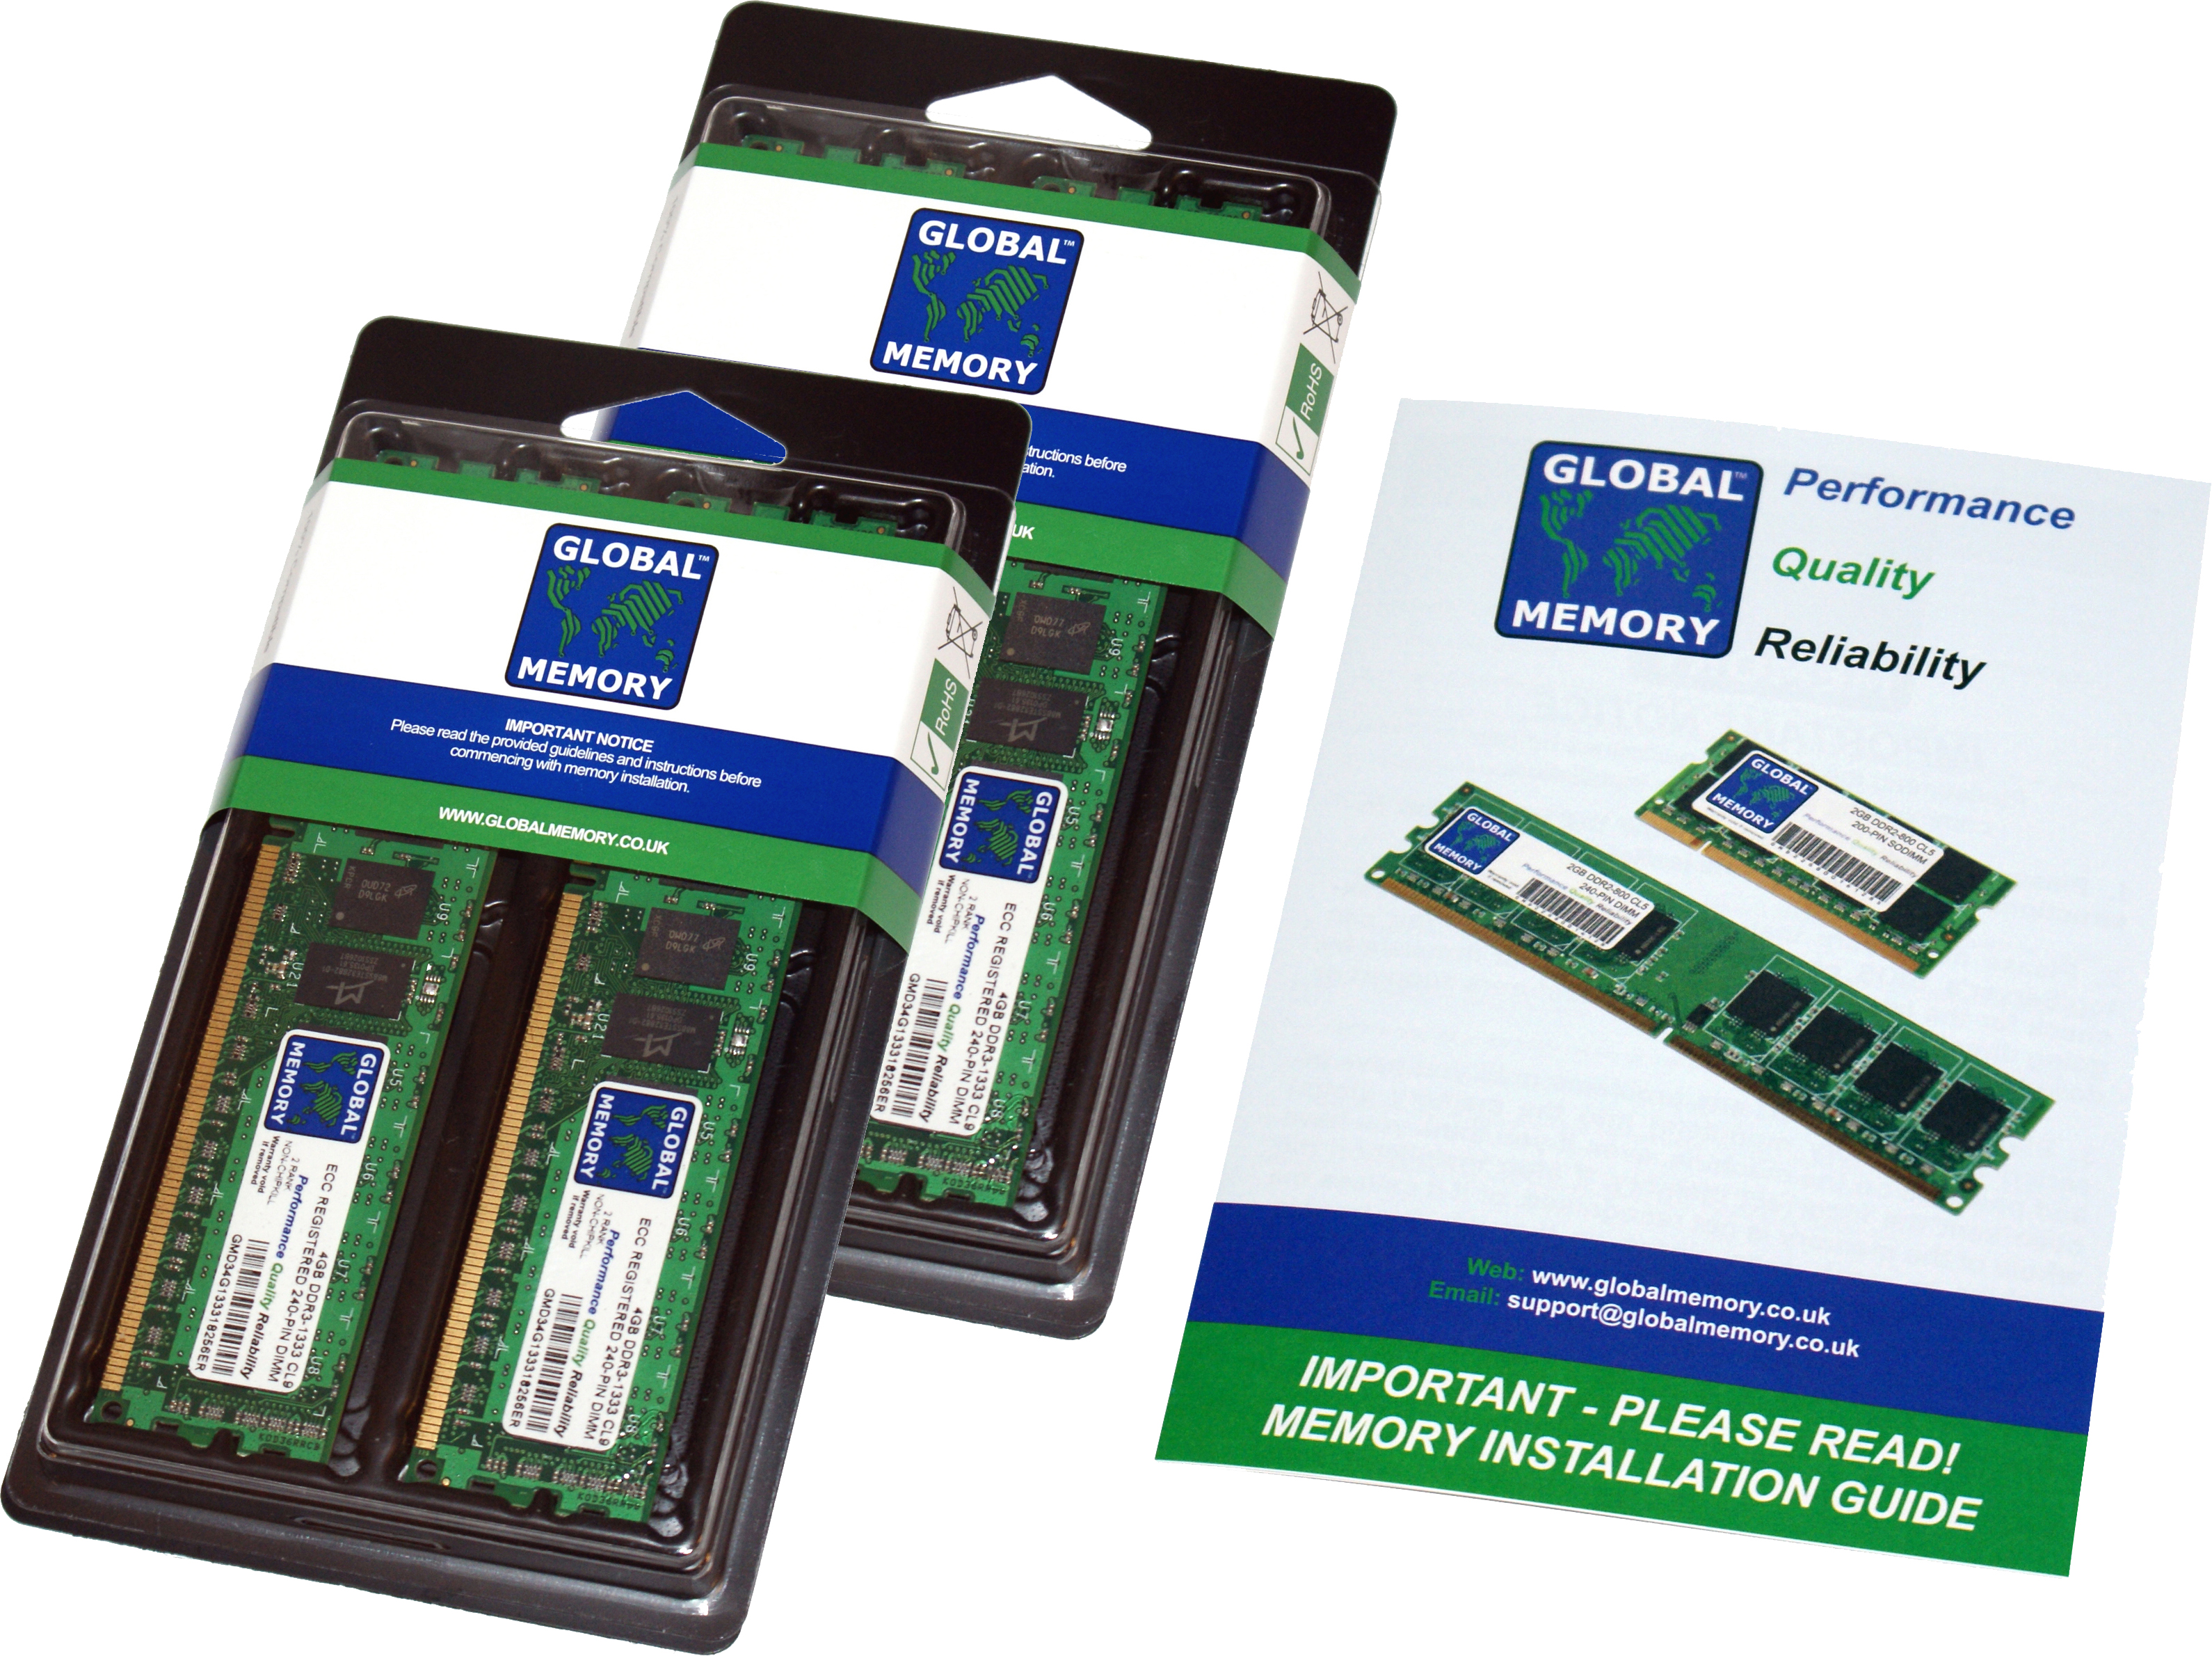 32GB (4 x 8GB) DDR4 2933MHz PC4-23400 288-PIN ECC REGISTERED DIMM (RDIMM) MEMORY RAM KIT FOR FUJITSU SERVERS/WORKSTATIONSS (4 RANK KIT CHIPKILL)